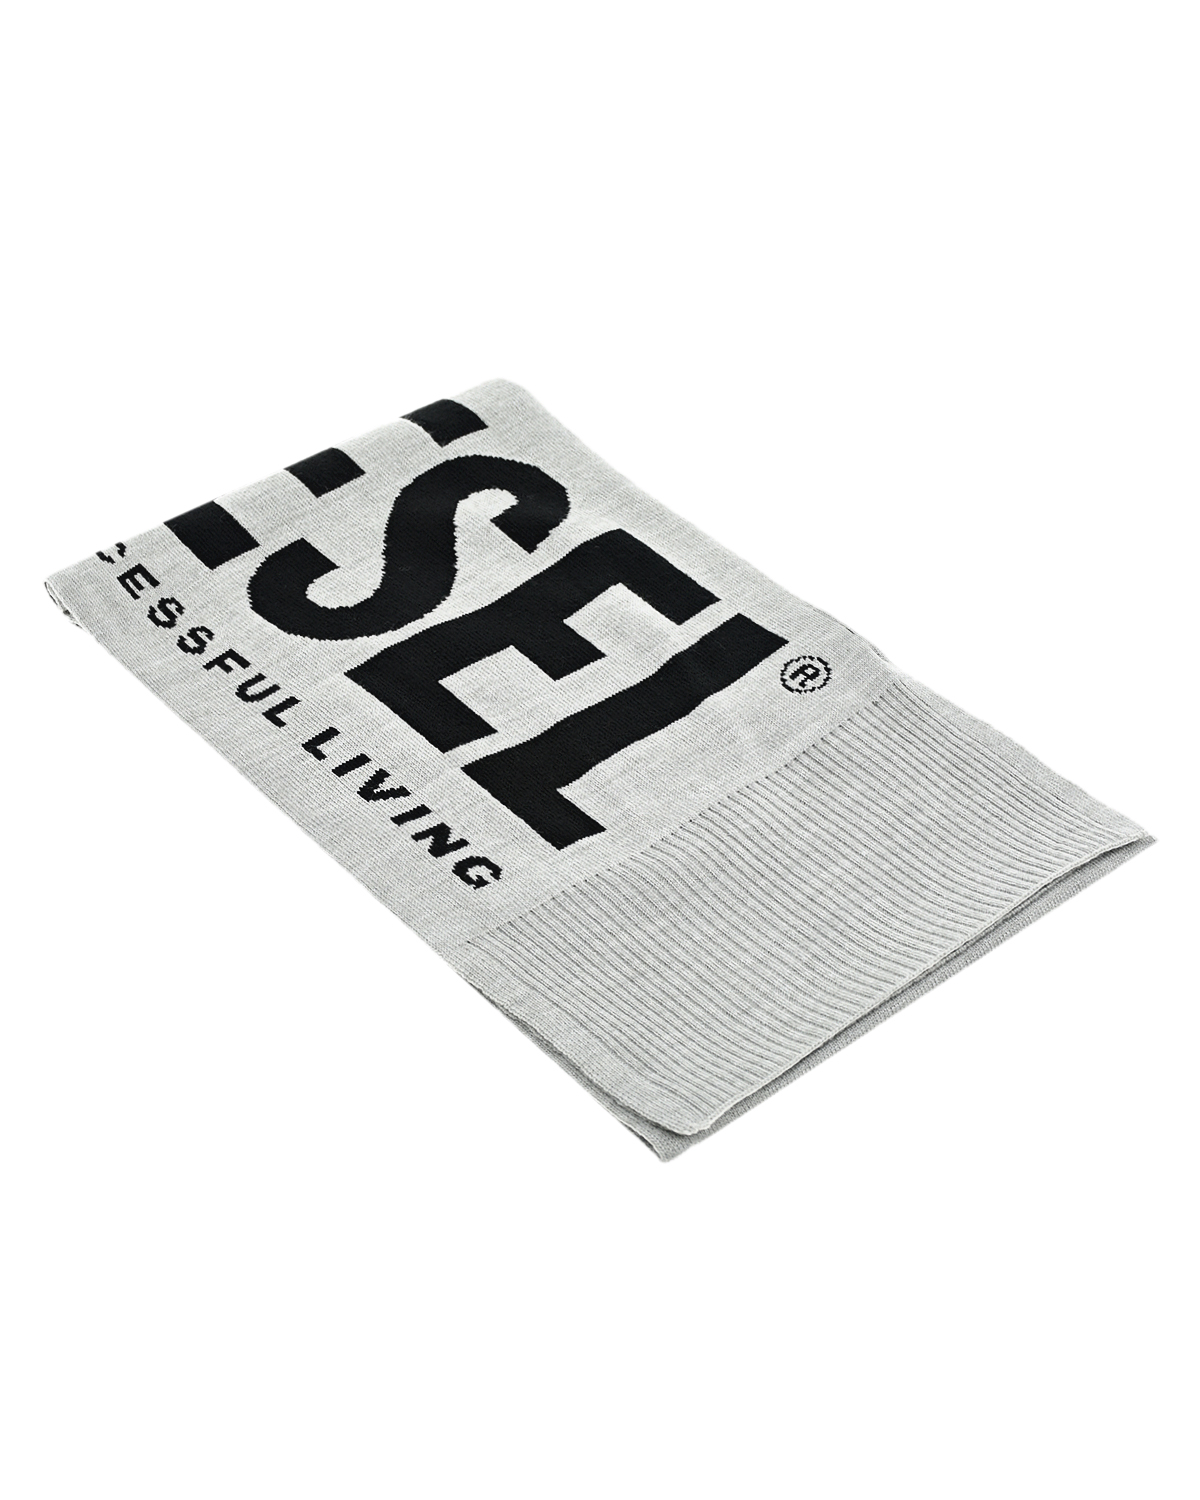 Серый шарф с надписью "for successful living" Diesel детский, размер unica, цвет мультиколор